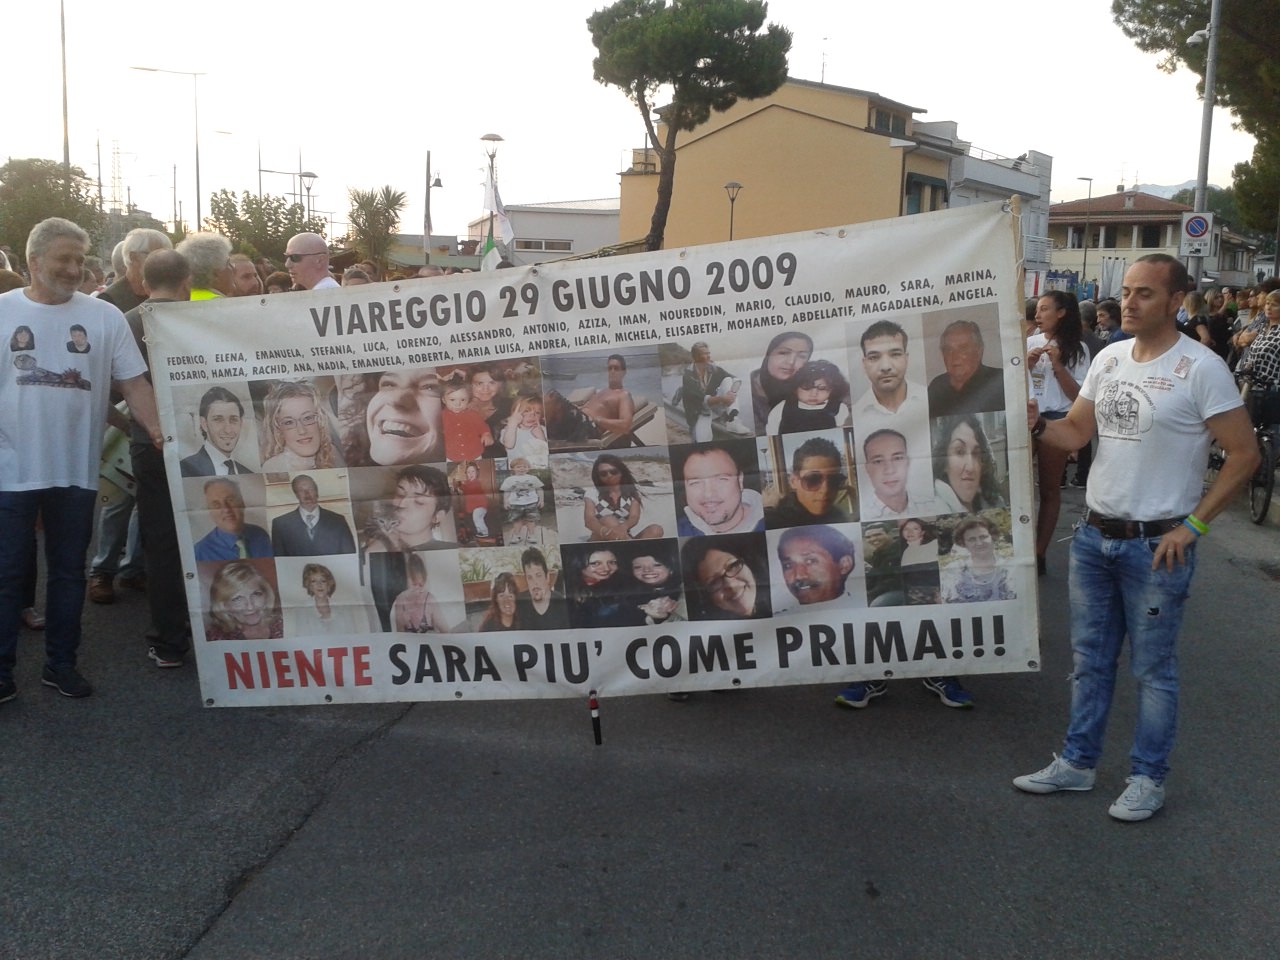 29 giugno, lutto cittadino: come cambia la viabilità a Viareggio